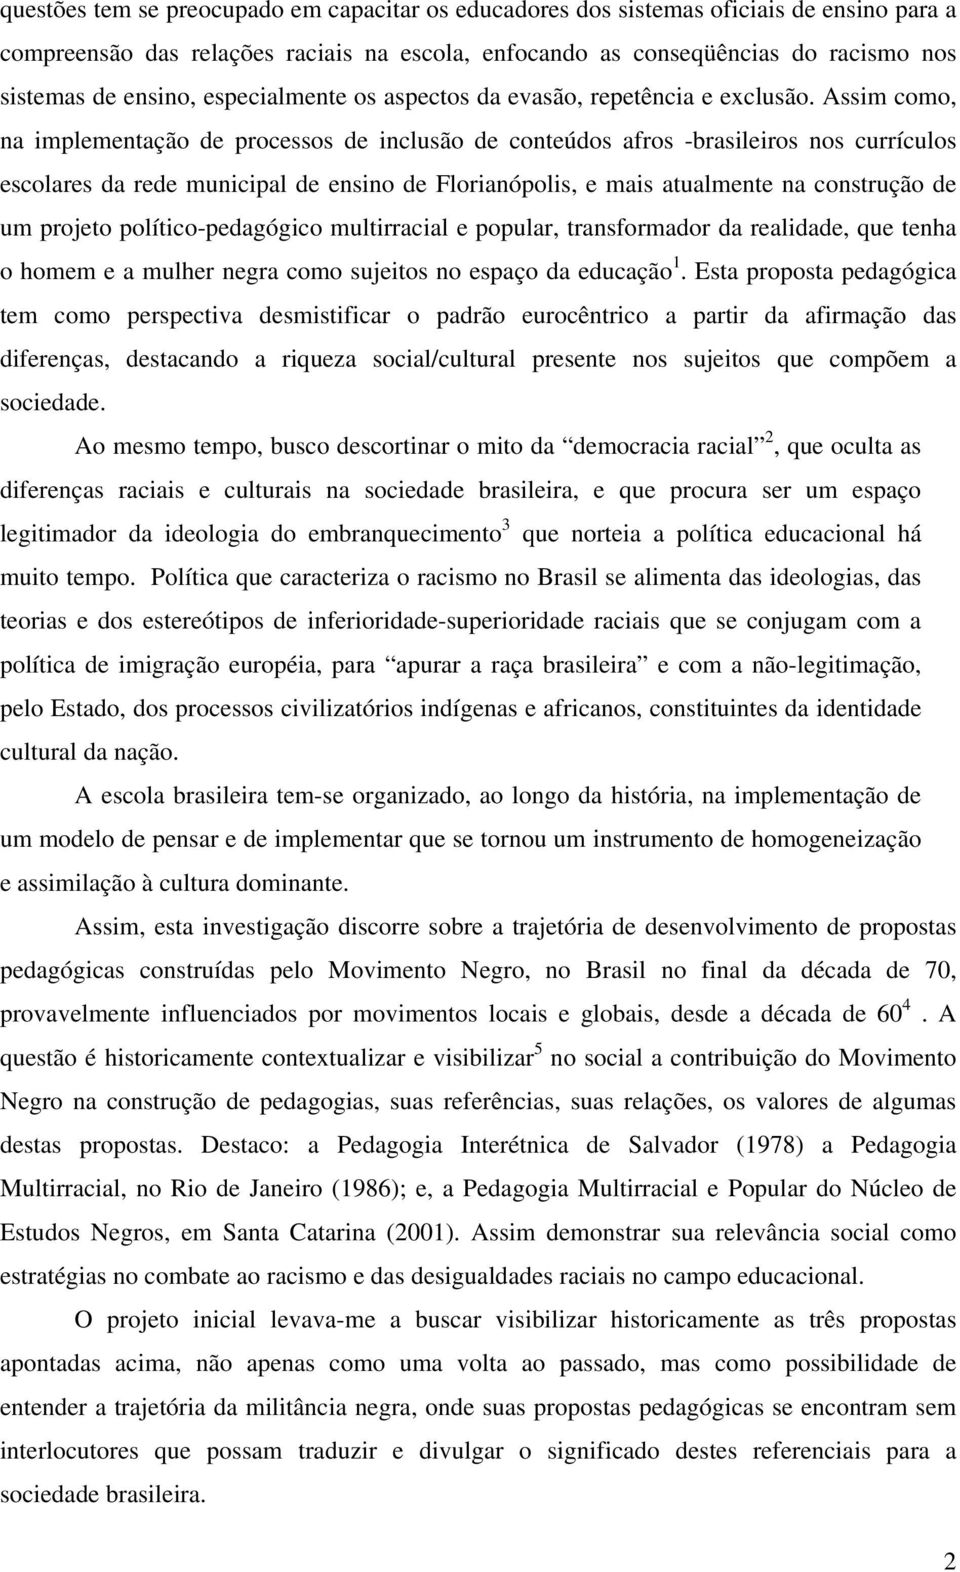 Assim como, na implementação de processos de inclusão de conteúdos afros -brasileiros nos currículos escolares da rede municipal de ensino de Florianópolis, e mais atualmente na construção de um